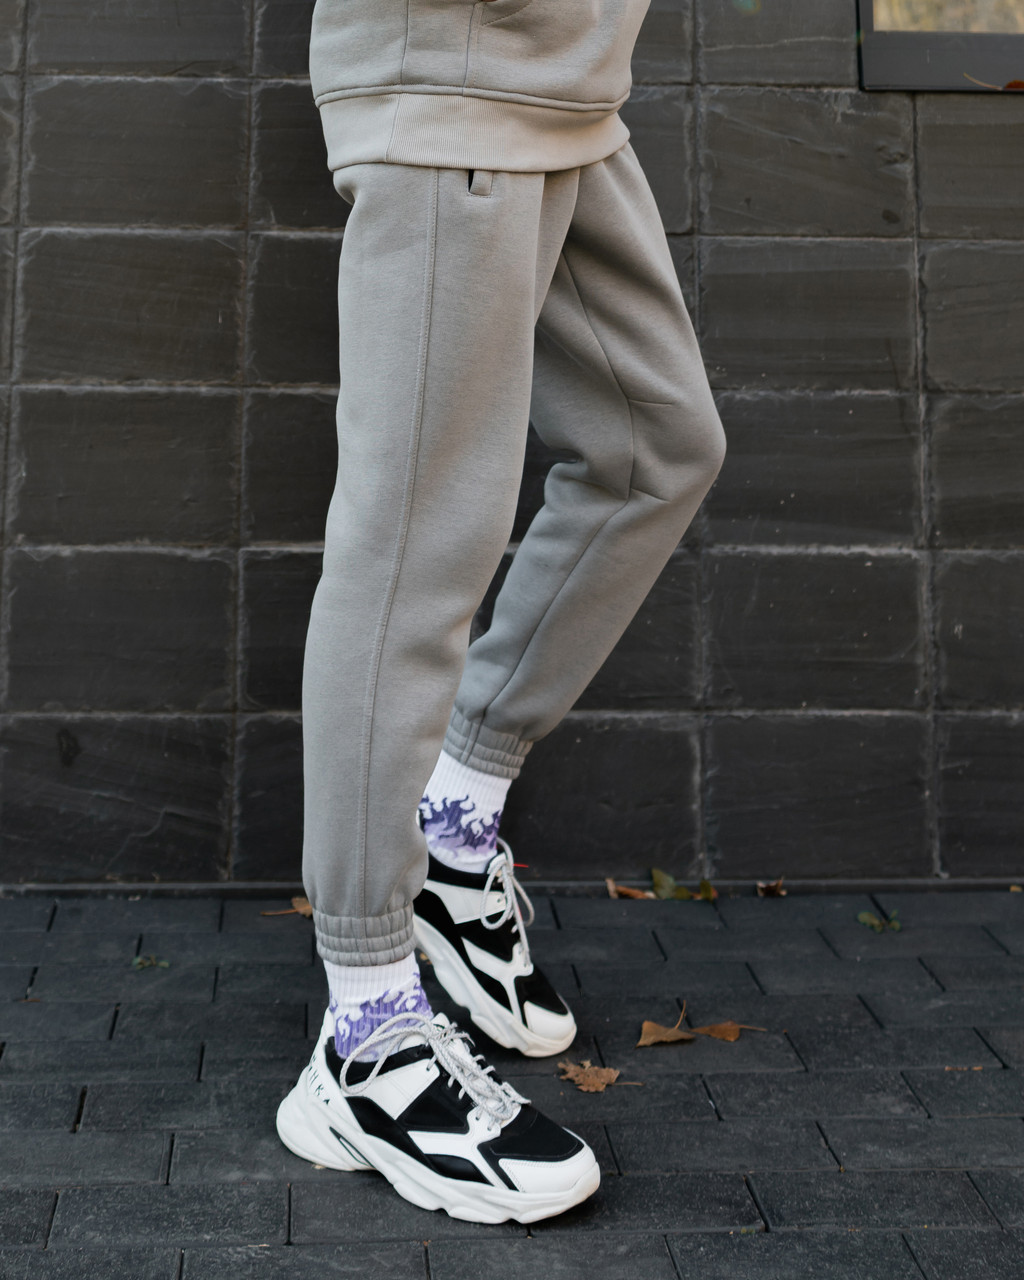 Теплые спортивные штаны Jog 2.0 серые Пушка Огонь - Фото 6